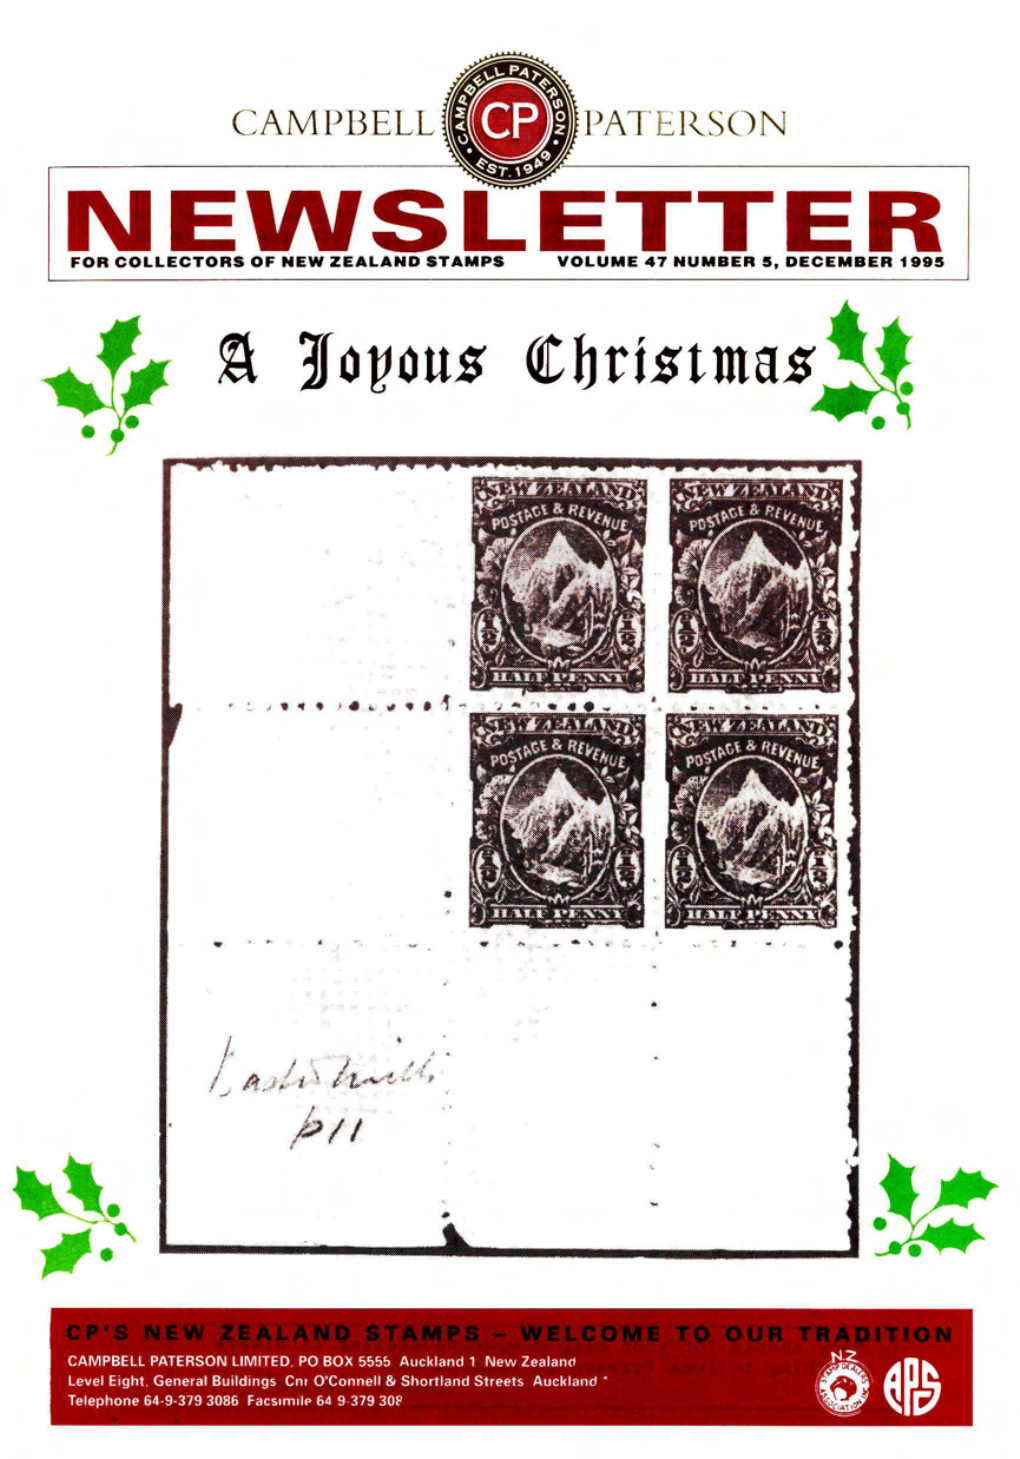 Nevvsletter for Collectors of New Zealand Stamps Volume 47 Number 5, December 1995